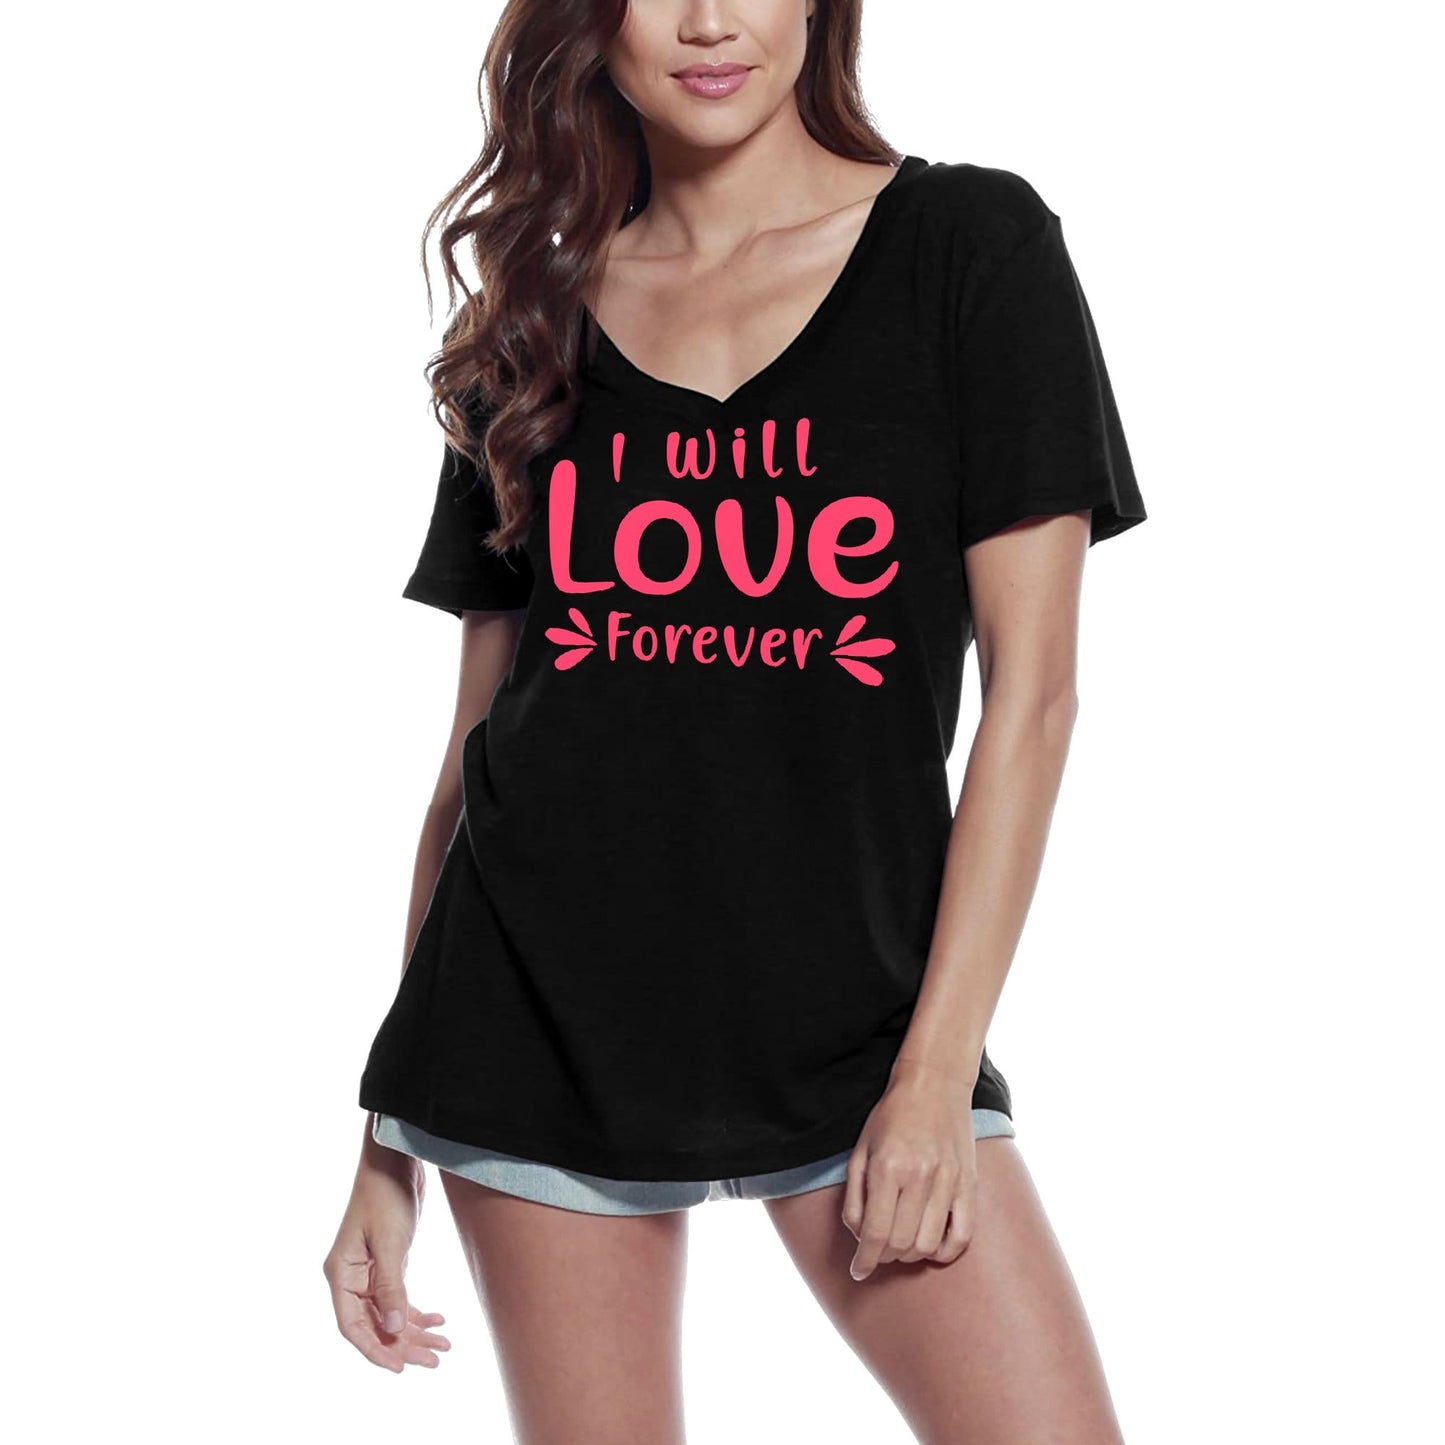 ULTRABASIC Women's T-Shirt I Will Love Forever - Heart Short Sleeve Tee Shirt Tops